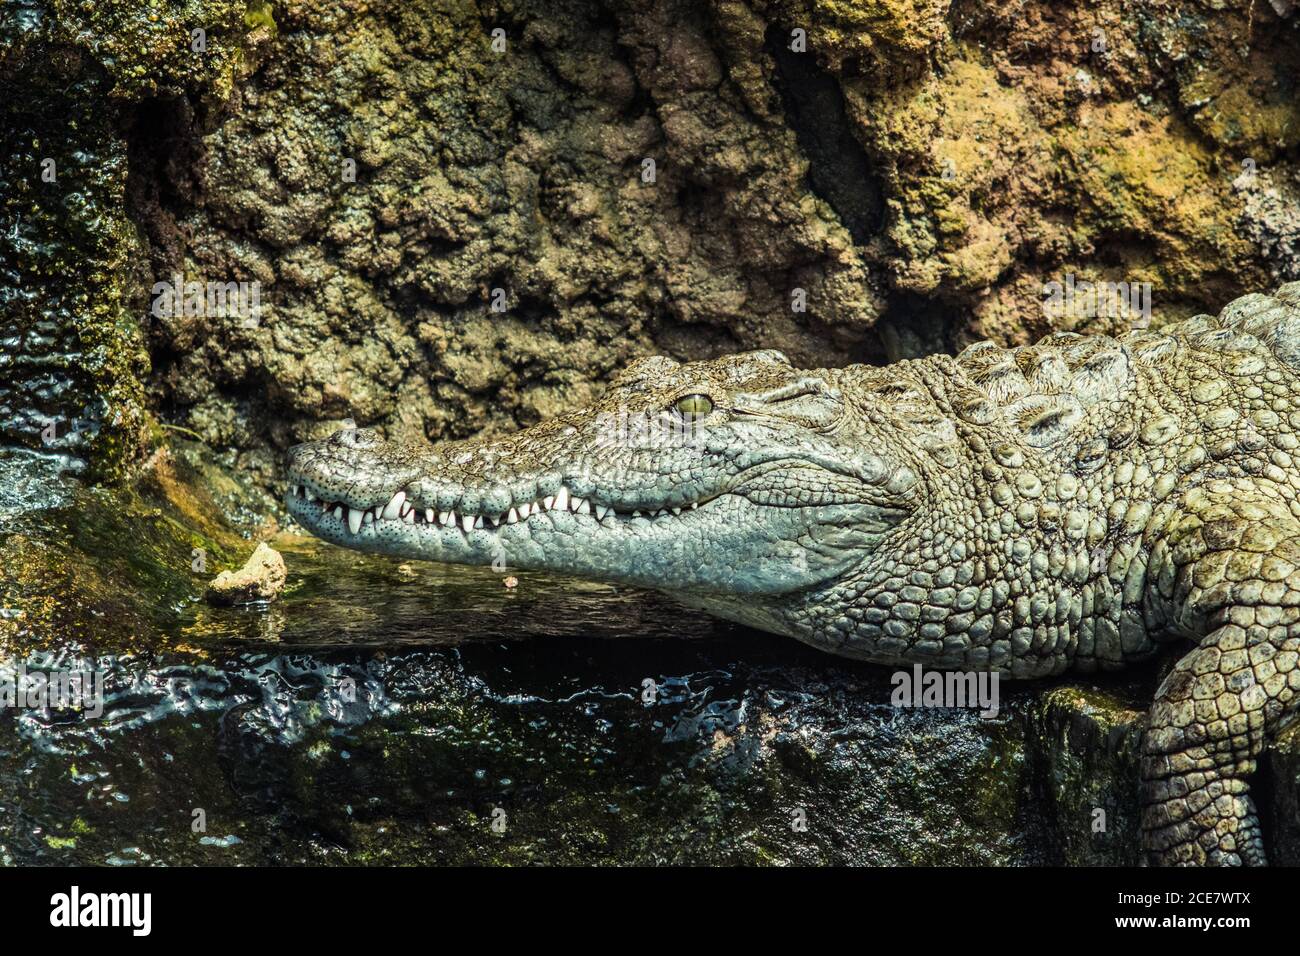 Kopf des großen ruhigen kaltblütigen Krokodils mit offenen Augen Und spitze Zähne, die beim Sitzen aus reinem Wasser gucken Im Aquarium Stockfoto